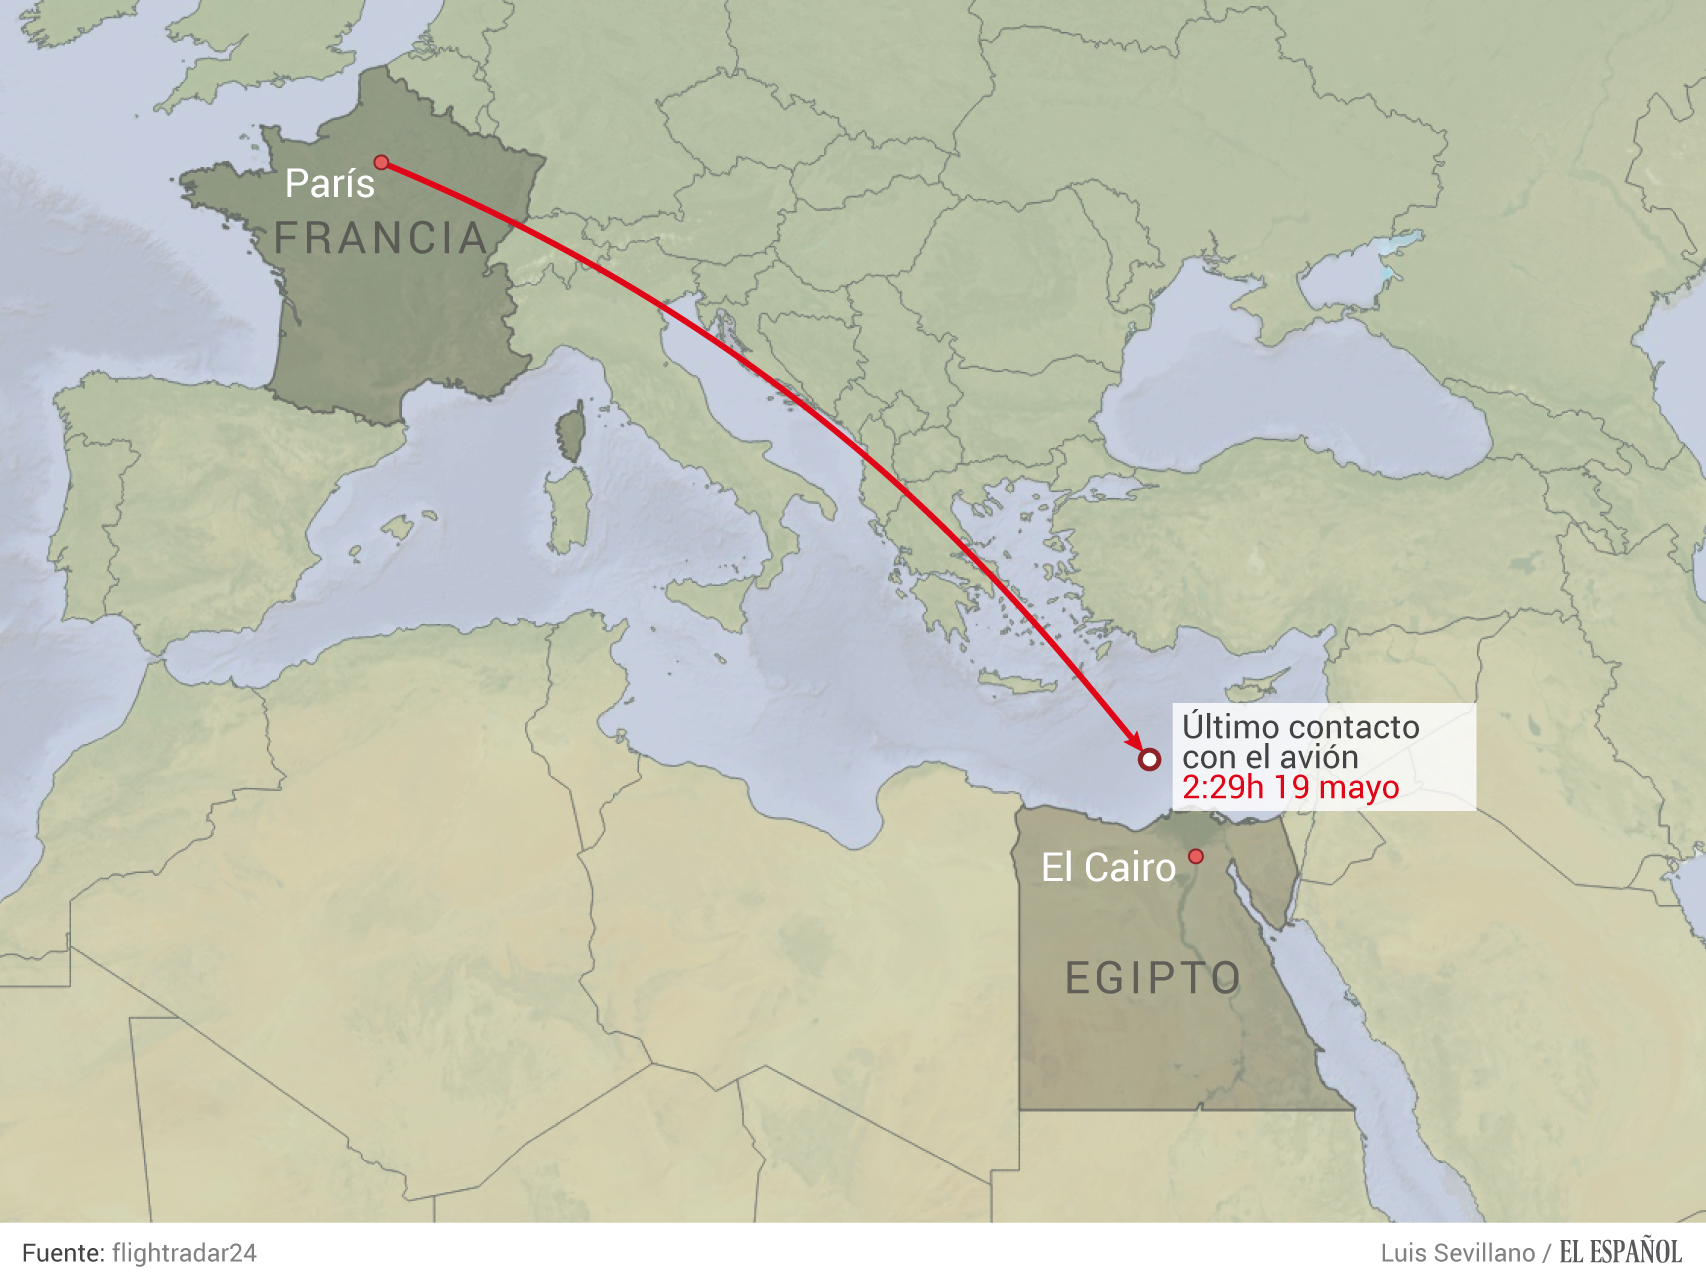 El vuelo MS804 de Egyptair había partido del aeropuerto Charles de Gaulle de París la noche del miércoles